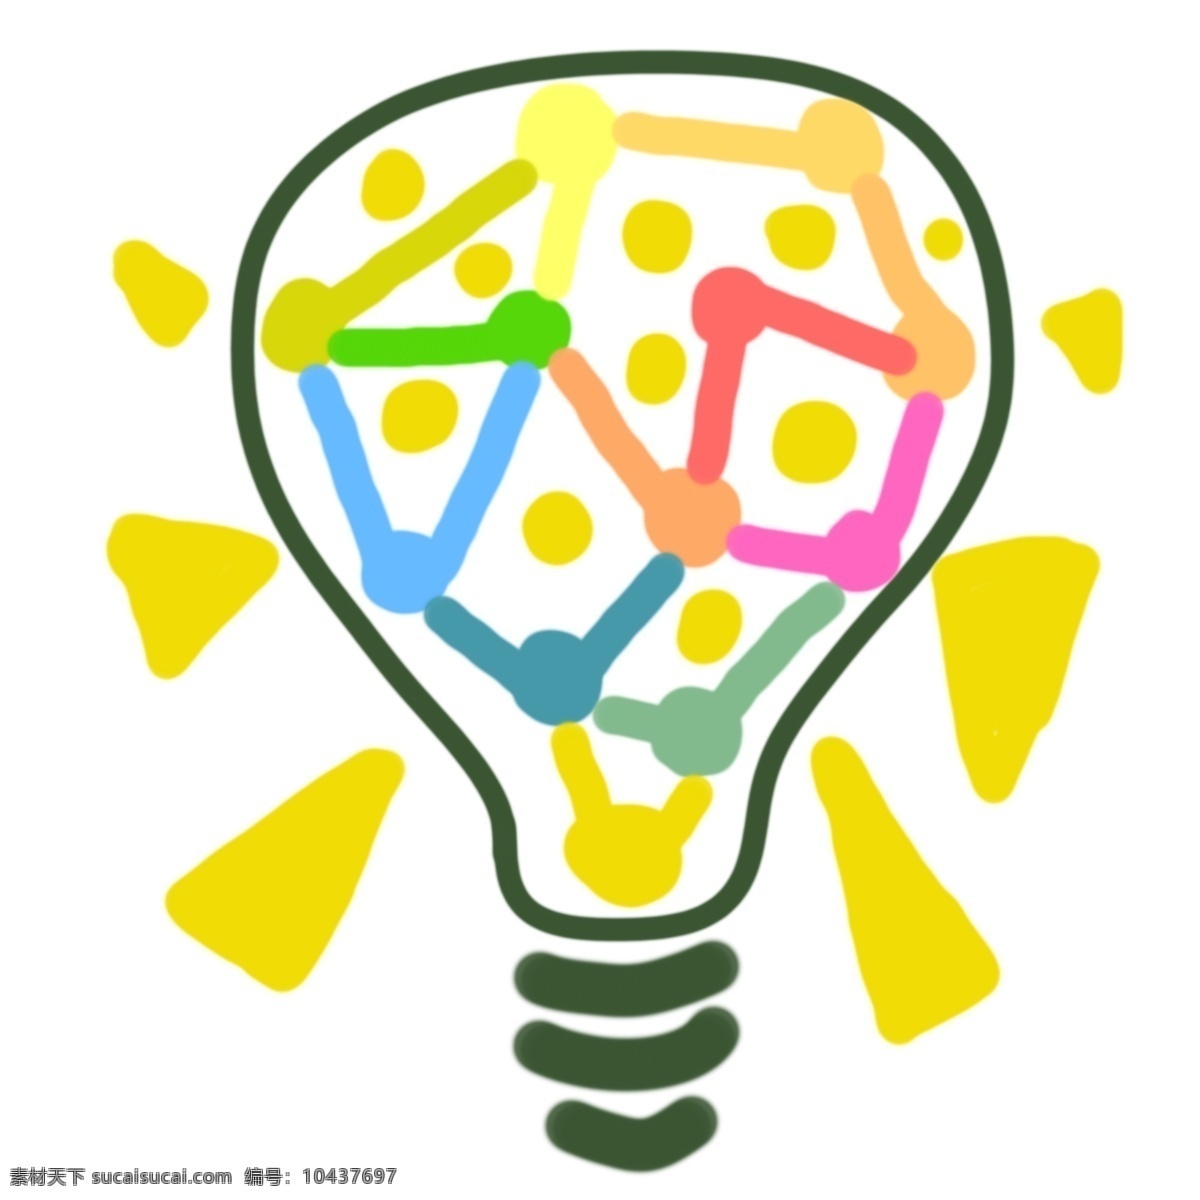 卡通 绿色 创意 灯泡 创意灯具插画 灯具 卡通灯泡 插画 绿色的灯泡 发光的灯泡 黄色的光芒 绿色灯泡